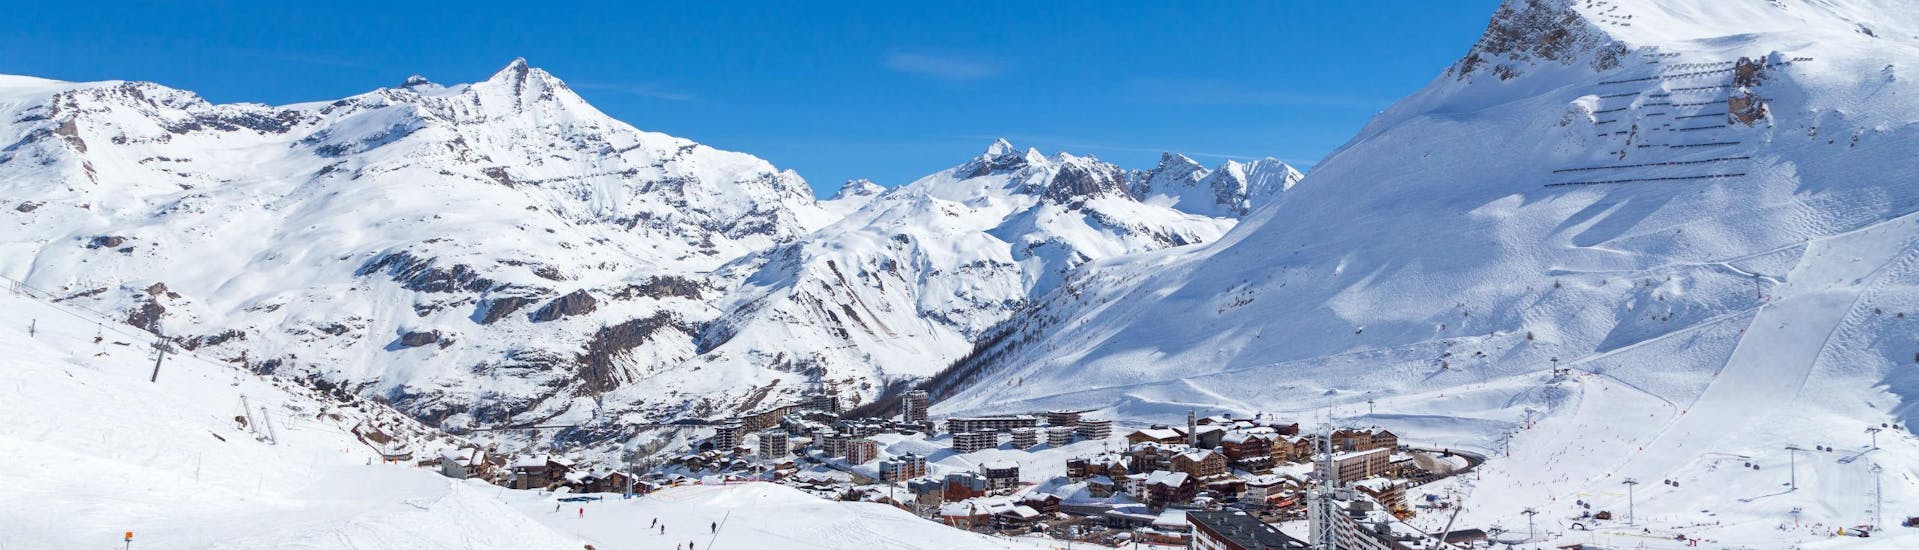 Une vue de la station de ski de Tignes sous un grand ciel bleu, avec ses nombreuses pistes utilisées par les écoles de ski locales pour leurs cours de ski.